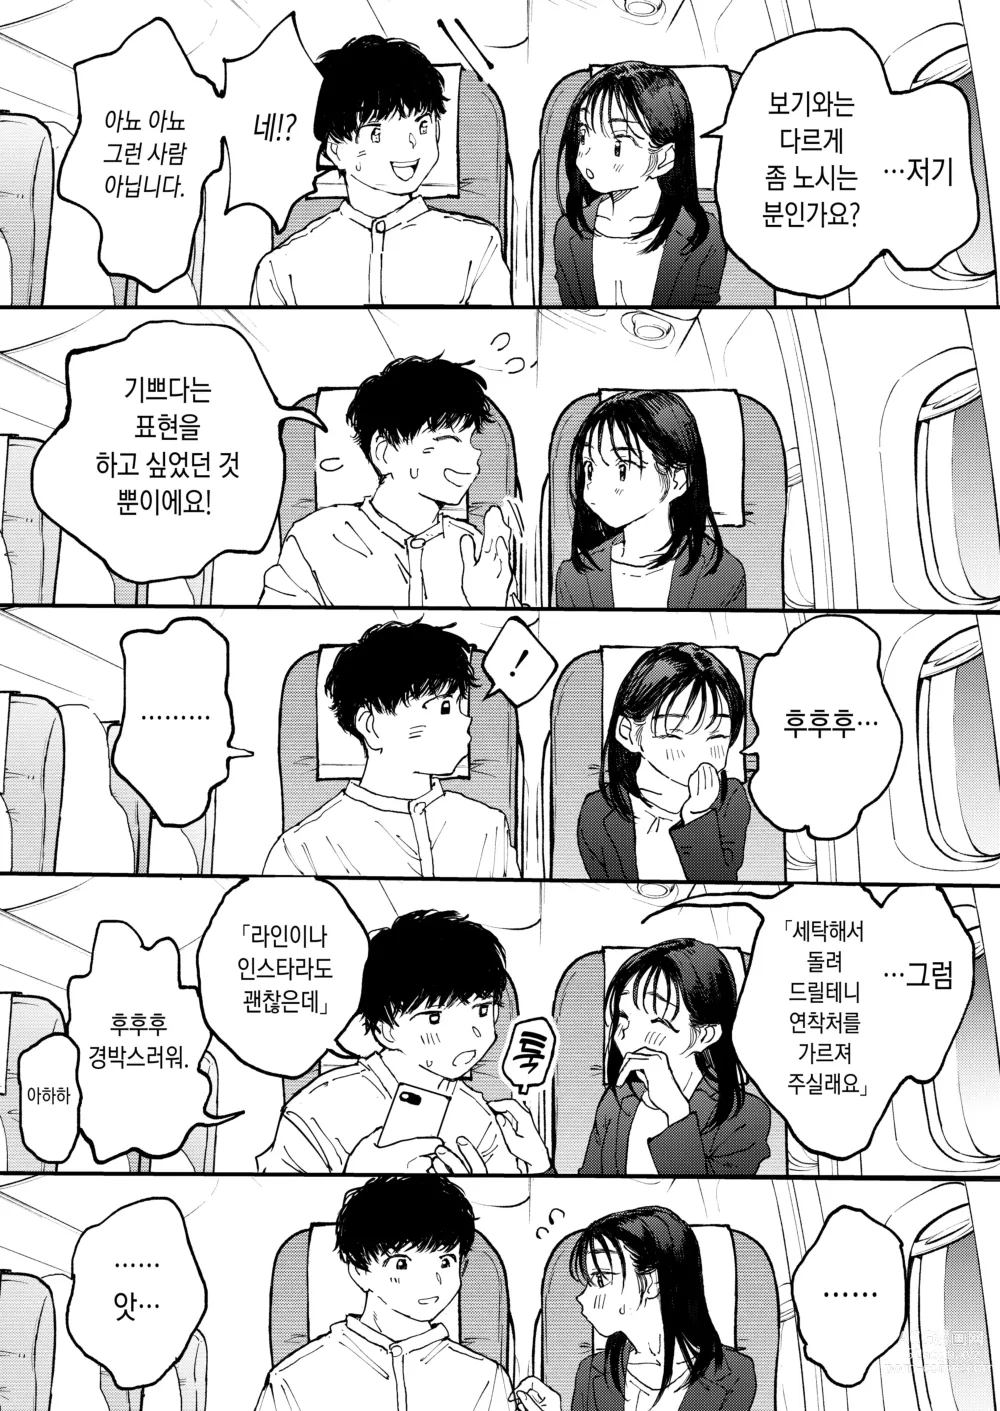 Page 10 of doujinshi 발정난 OL은 비행기 안에서도 성욕을 채우고 싶다